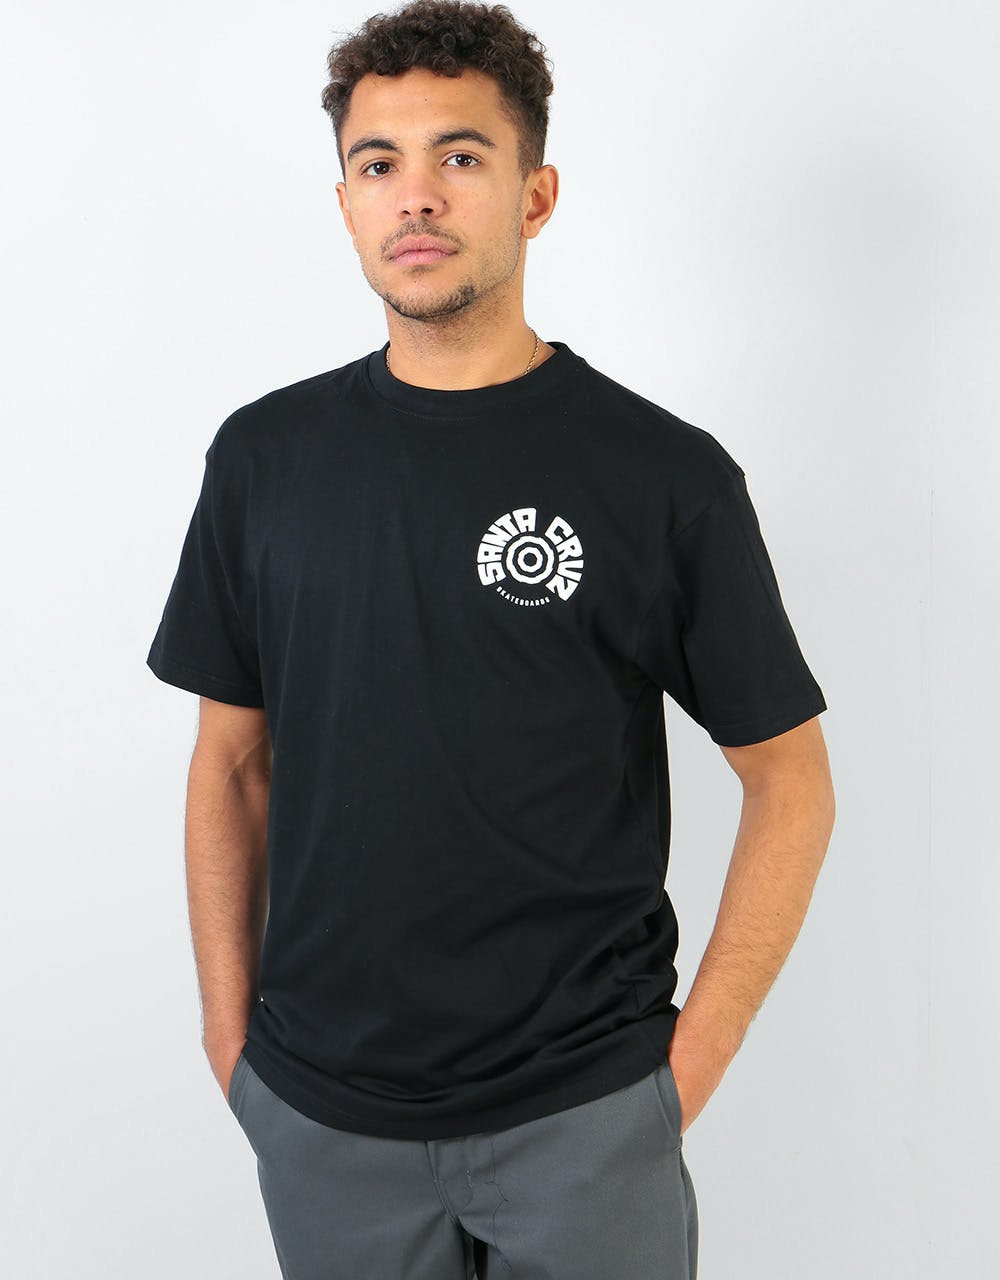 Santa Cruz Tortile T-Shirt - Black